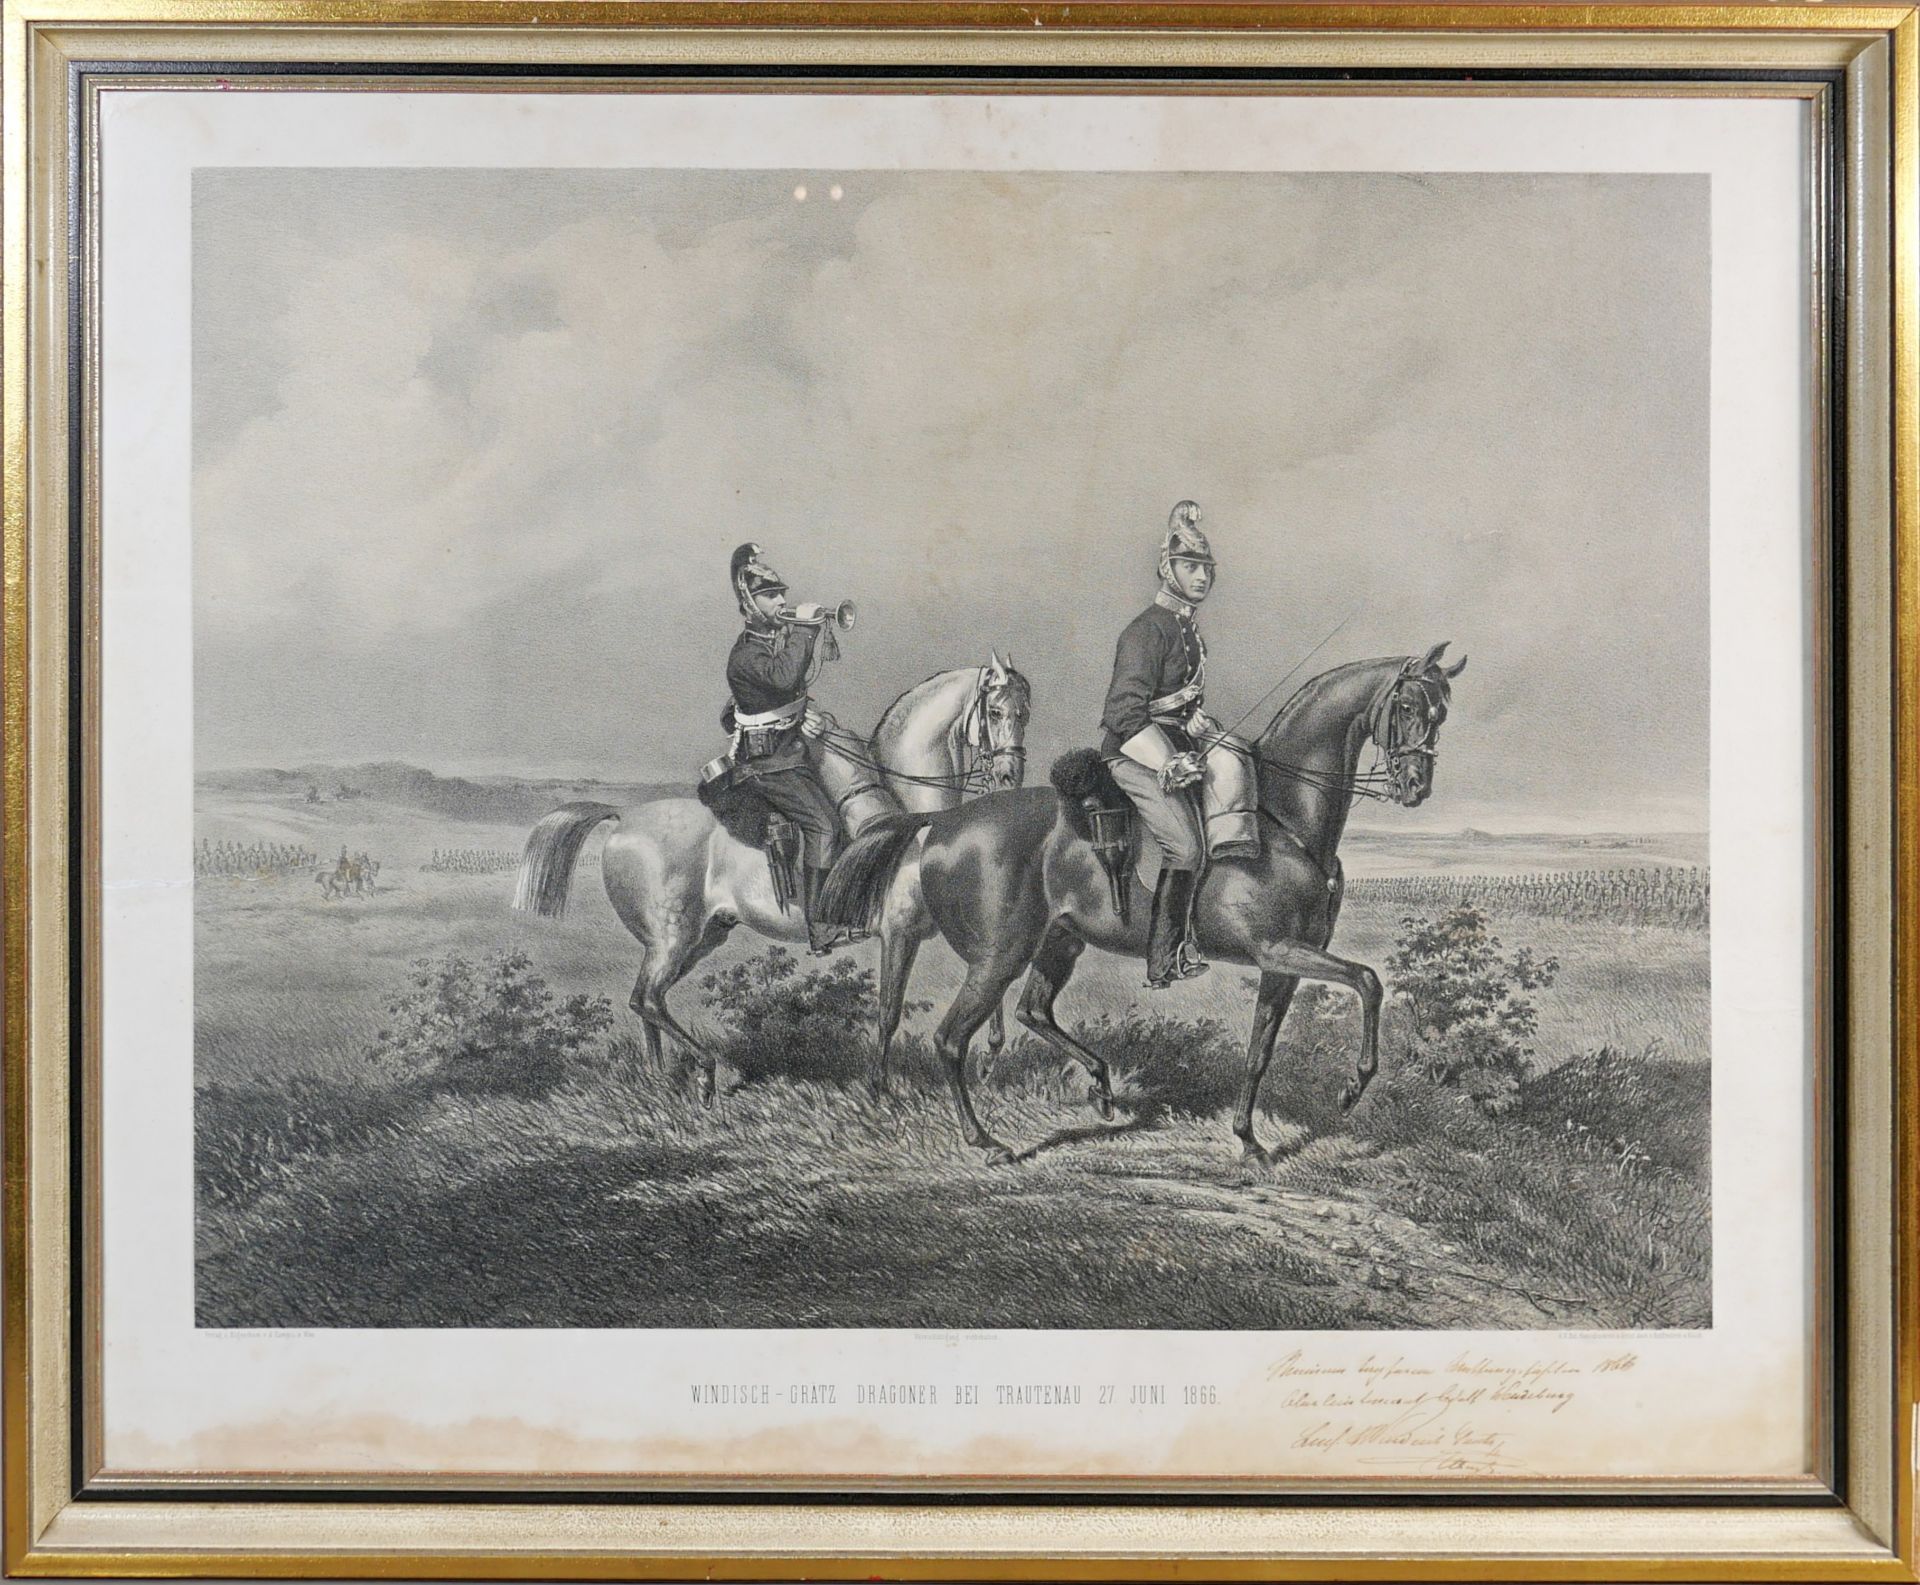 Windisch Grätz Dragoner bei Trautenau am 27. Juni 1866 - Image 3 of 3